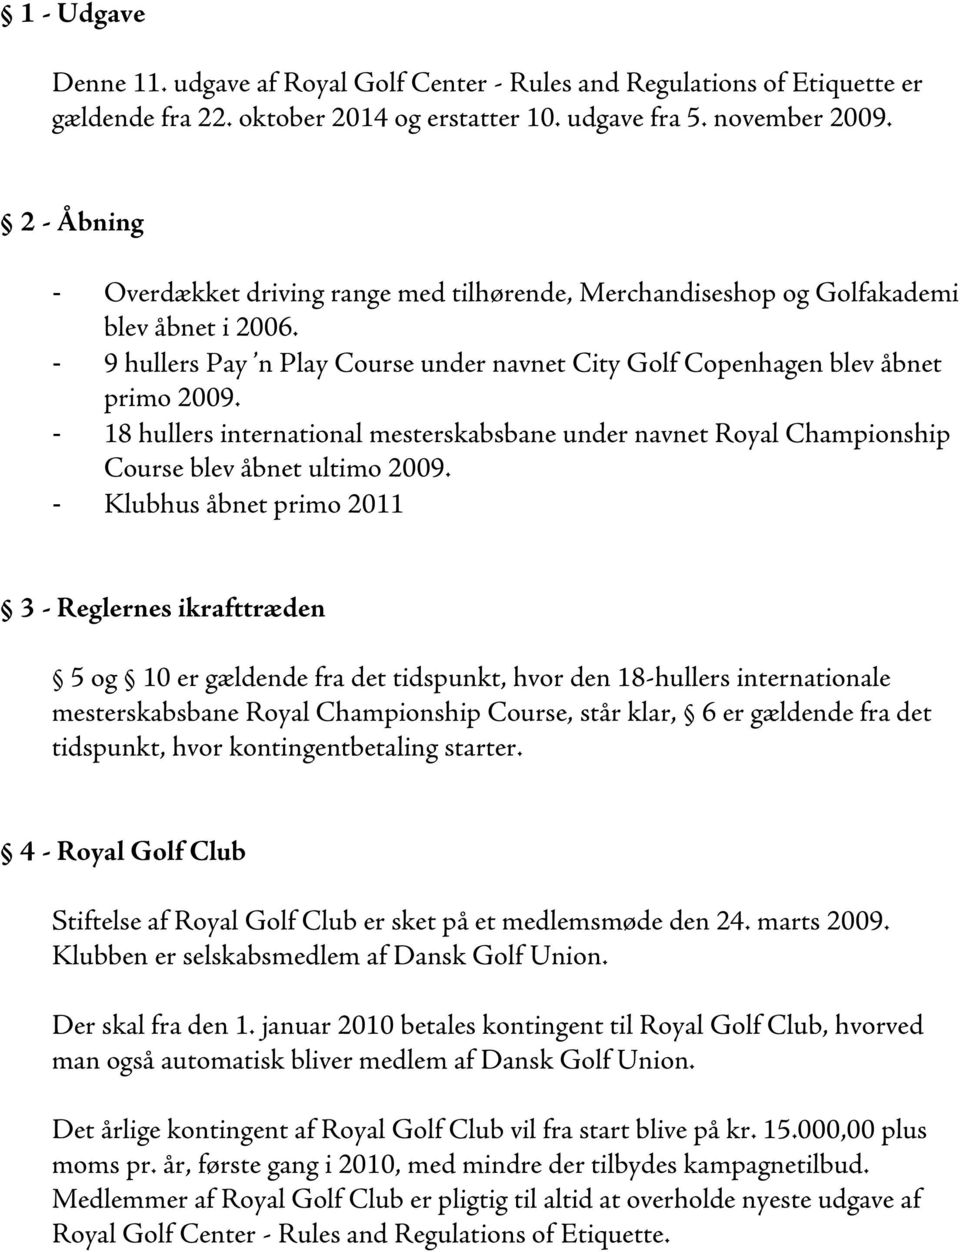 - 18 hullers international mesterskabsbane under navnet Royal Championship Course blev åbnet ultimo 2009.